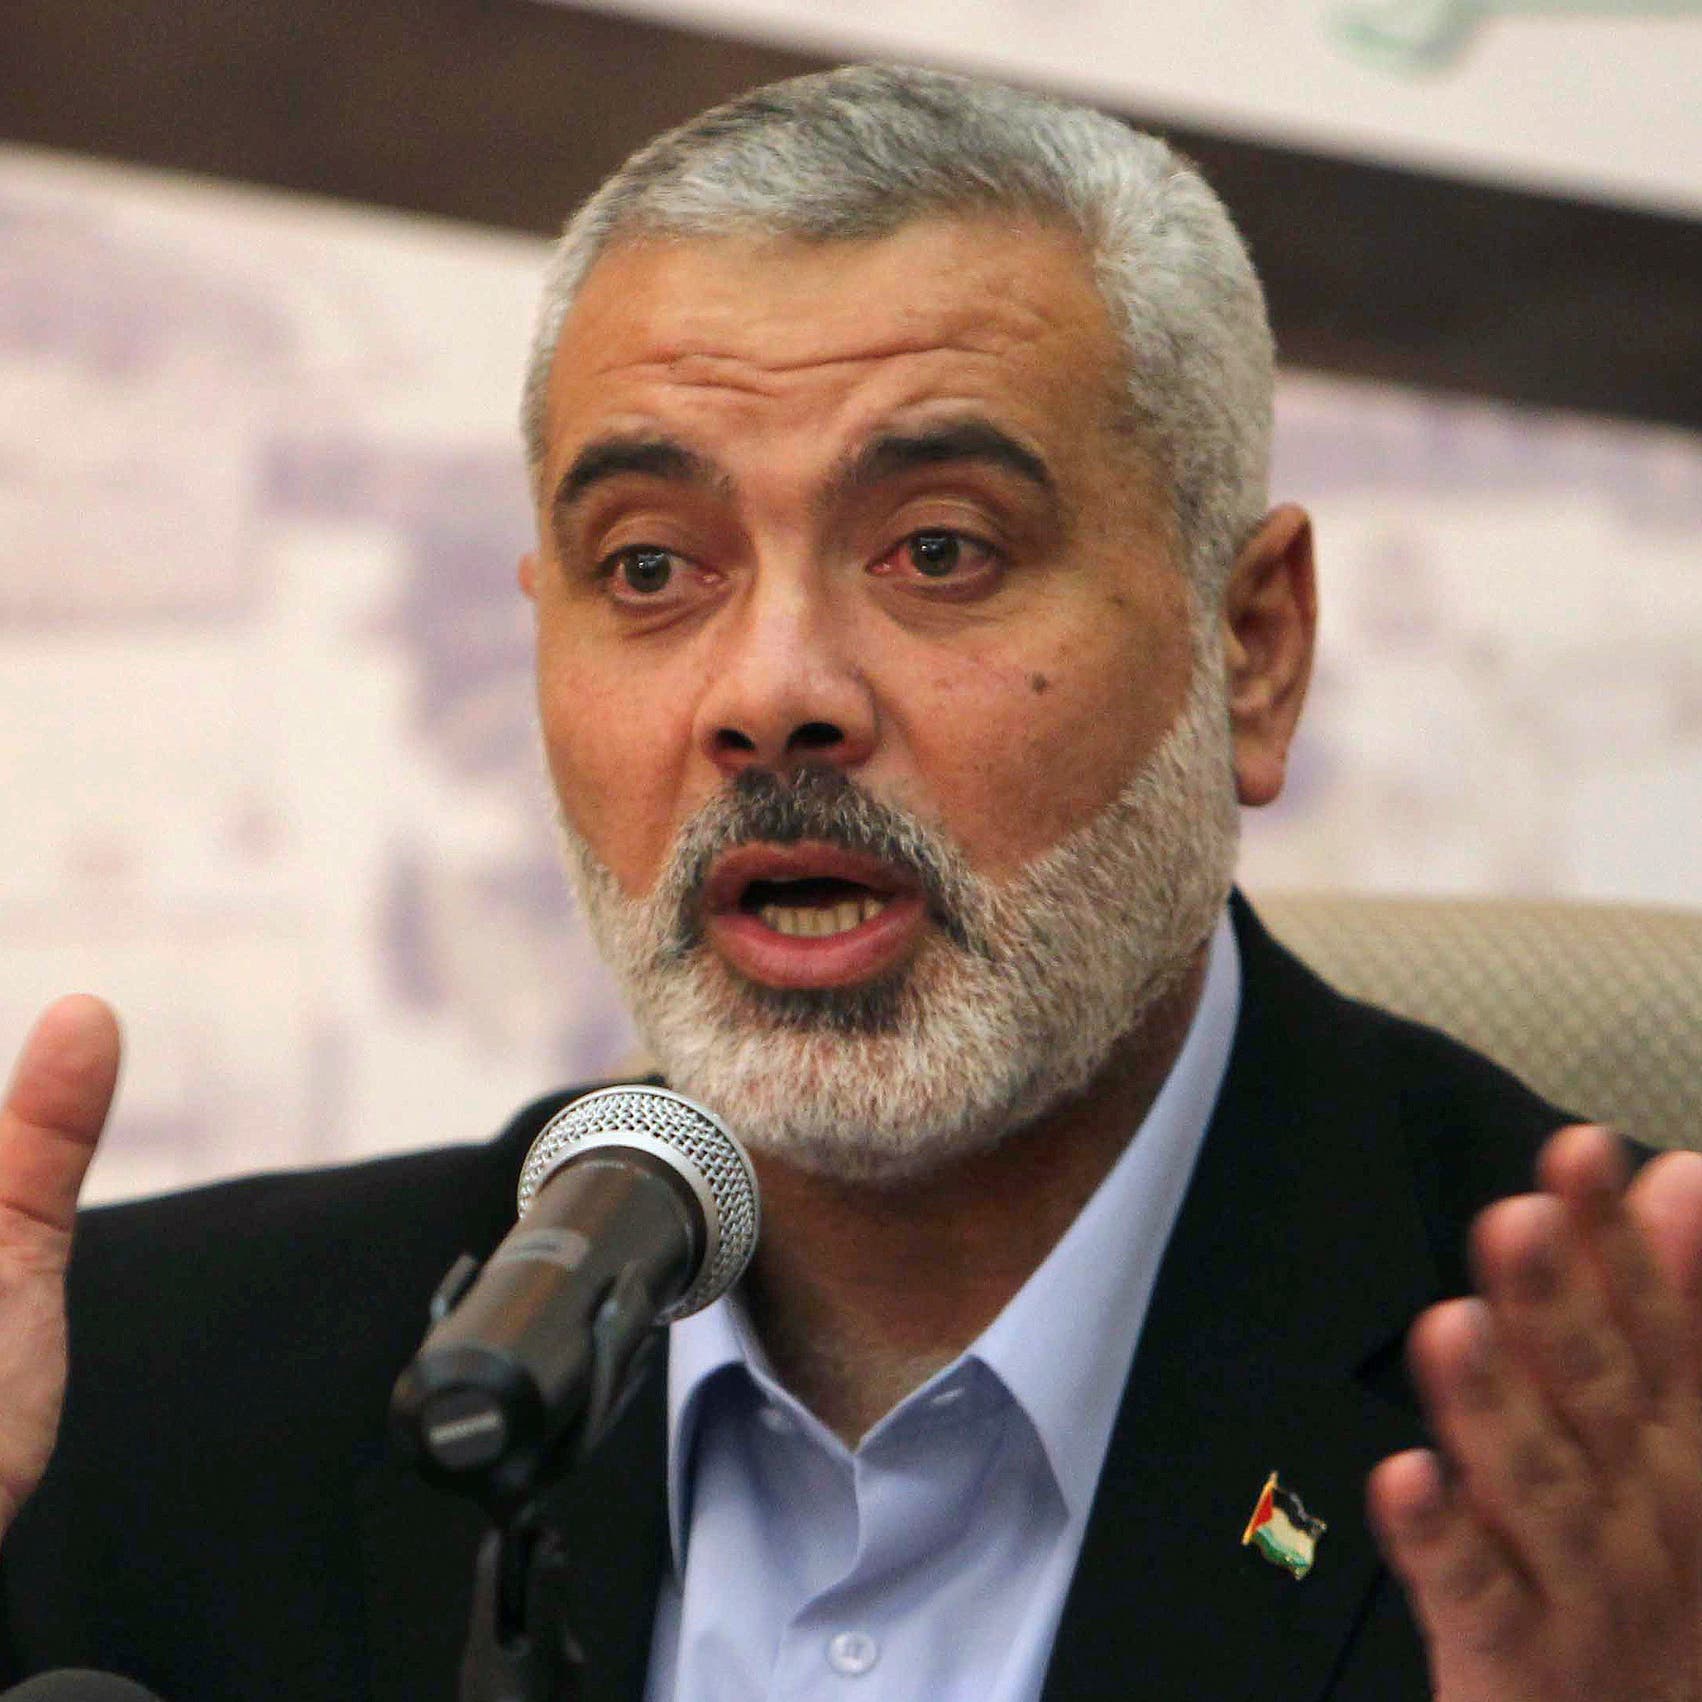 وفد حماس في القاهرة لبحث تثبيت الهدنة والمصالحة وإعمار غزة 